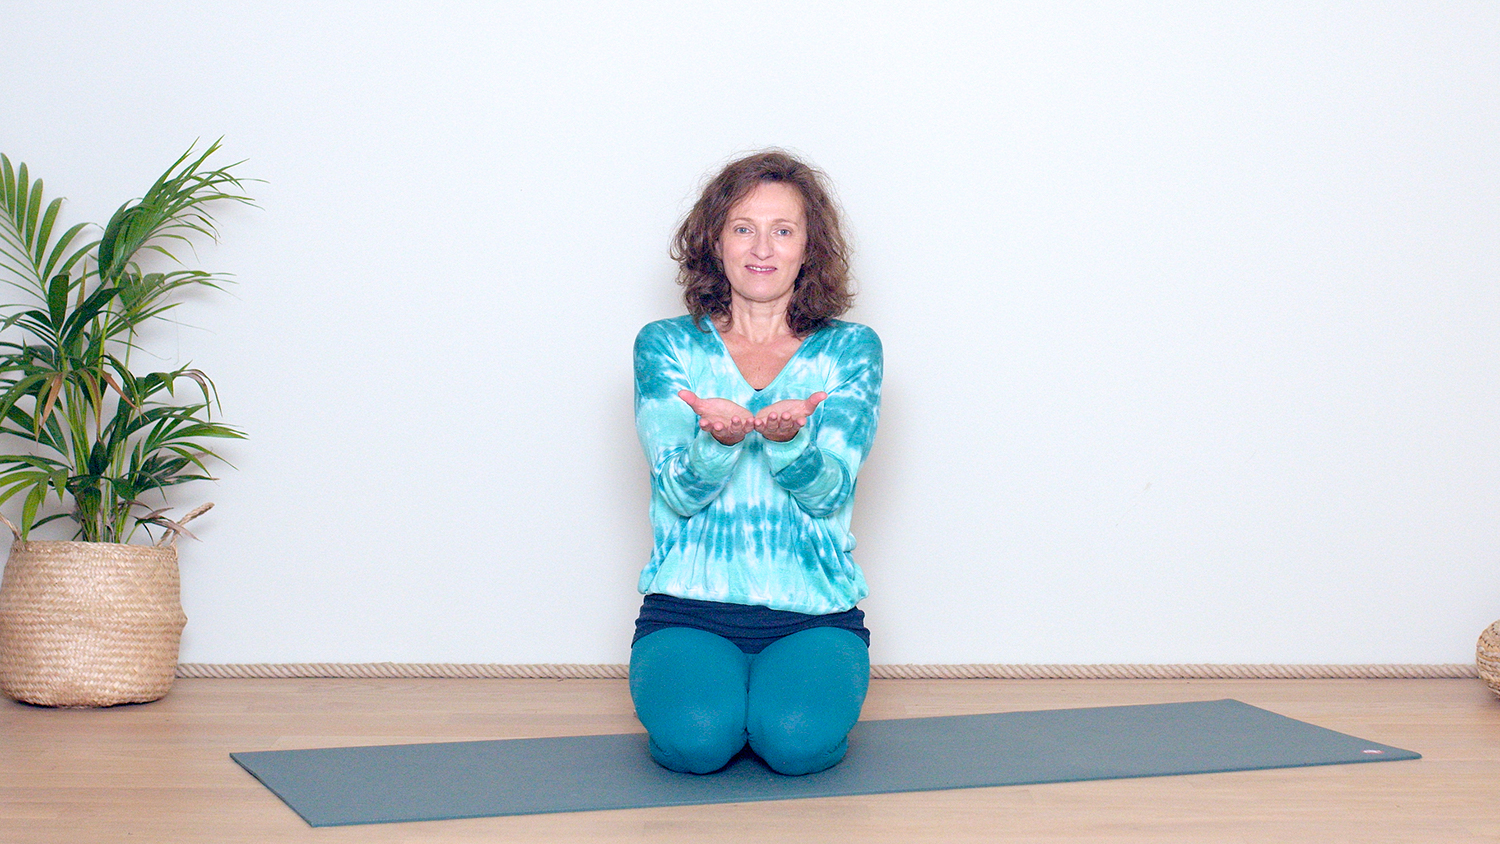 Présentation du Parcours "Yoga du matin" | Cours de yoga en ligne avec Delphine Denis | Présentations